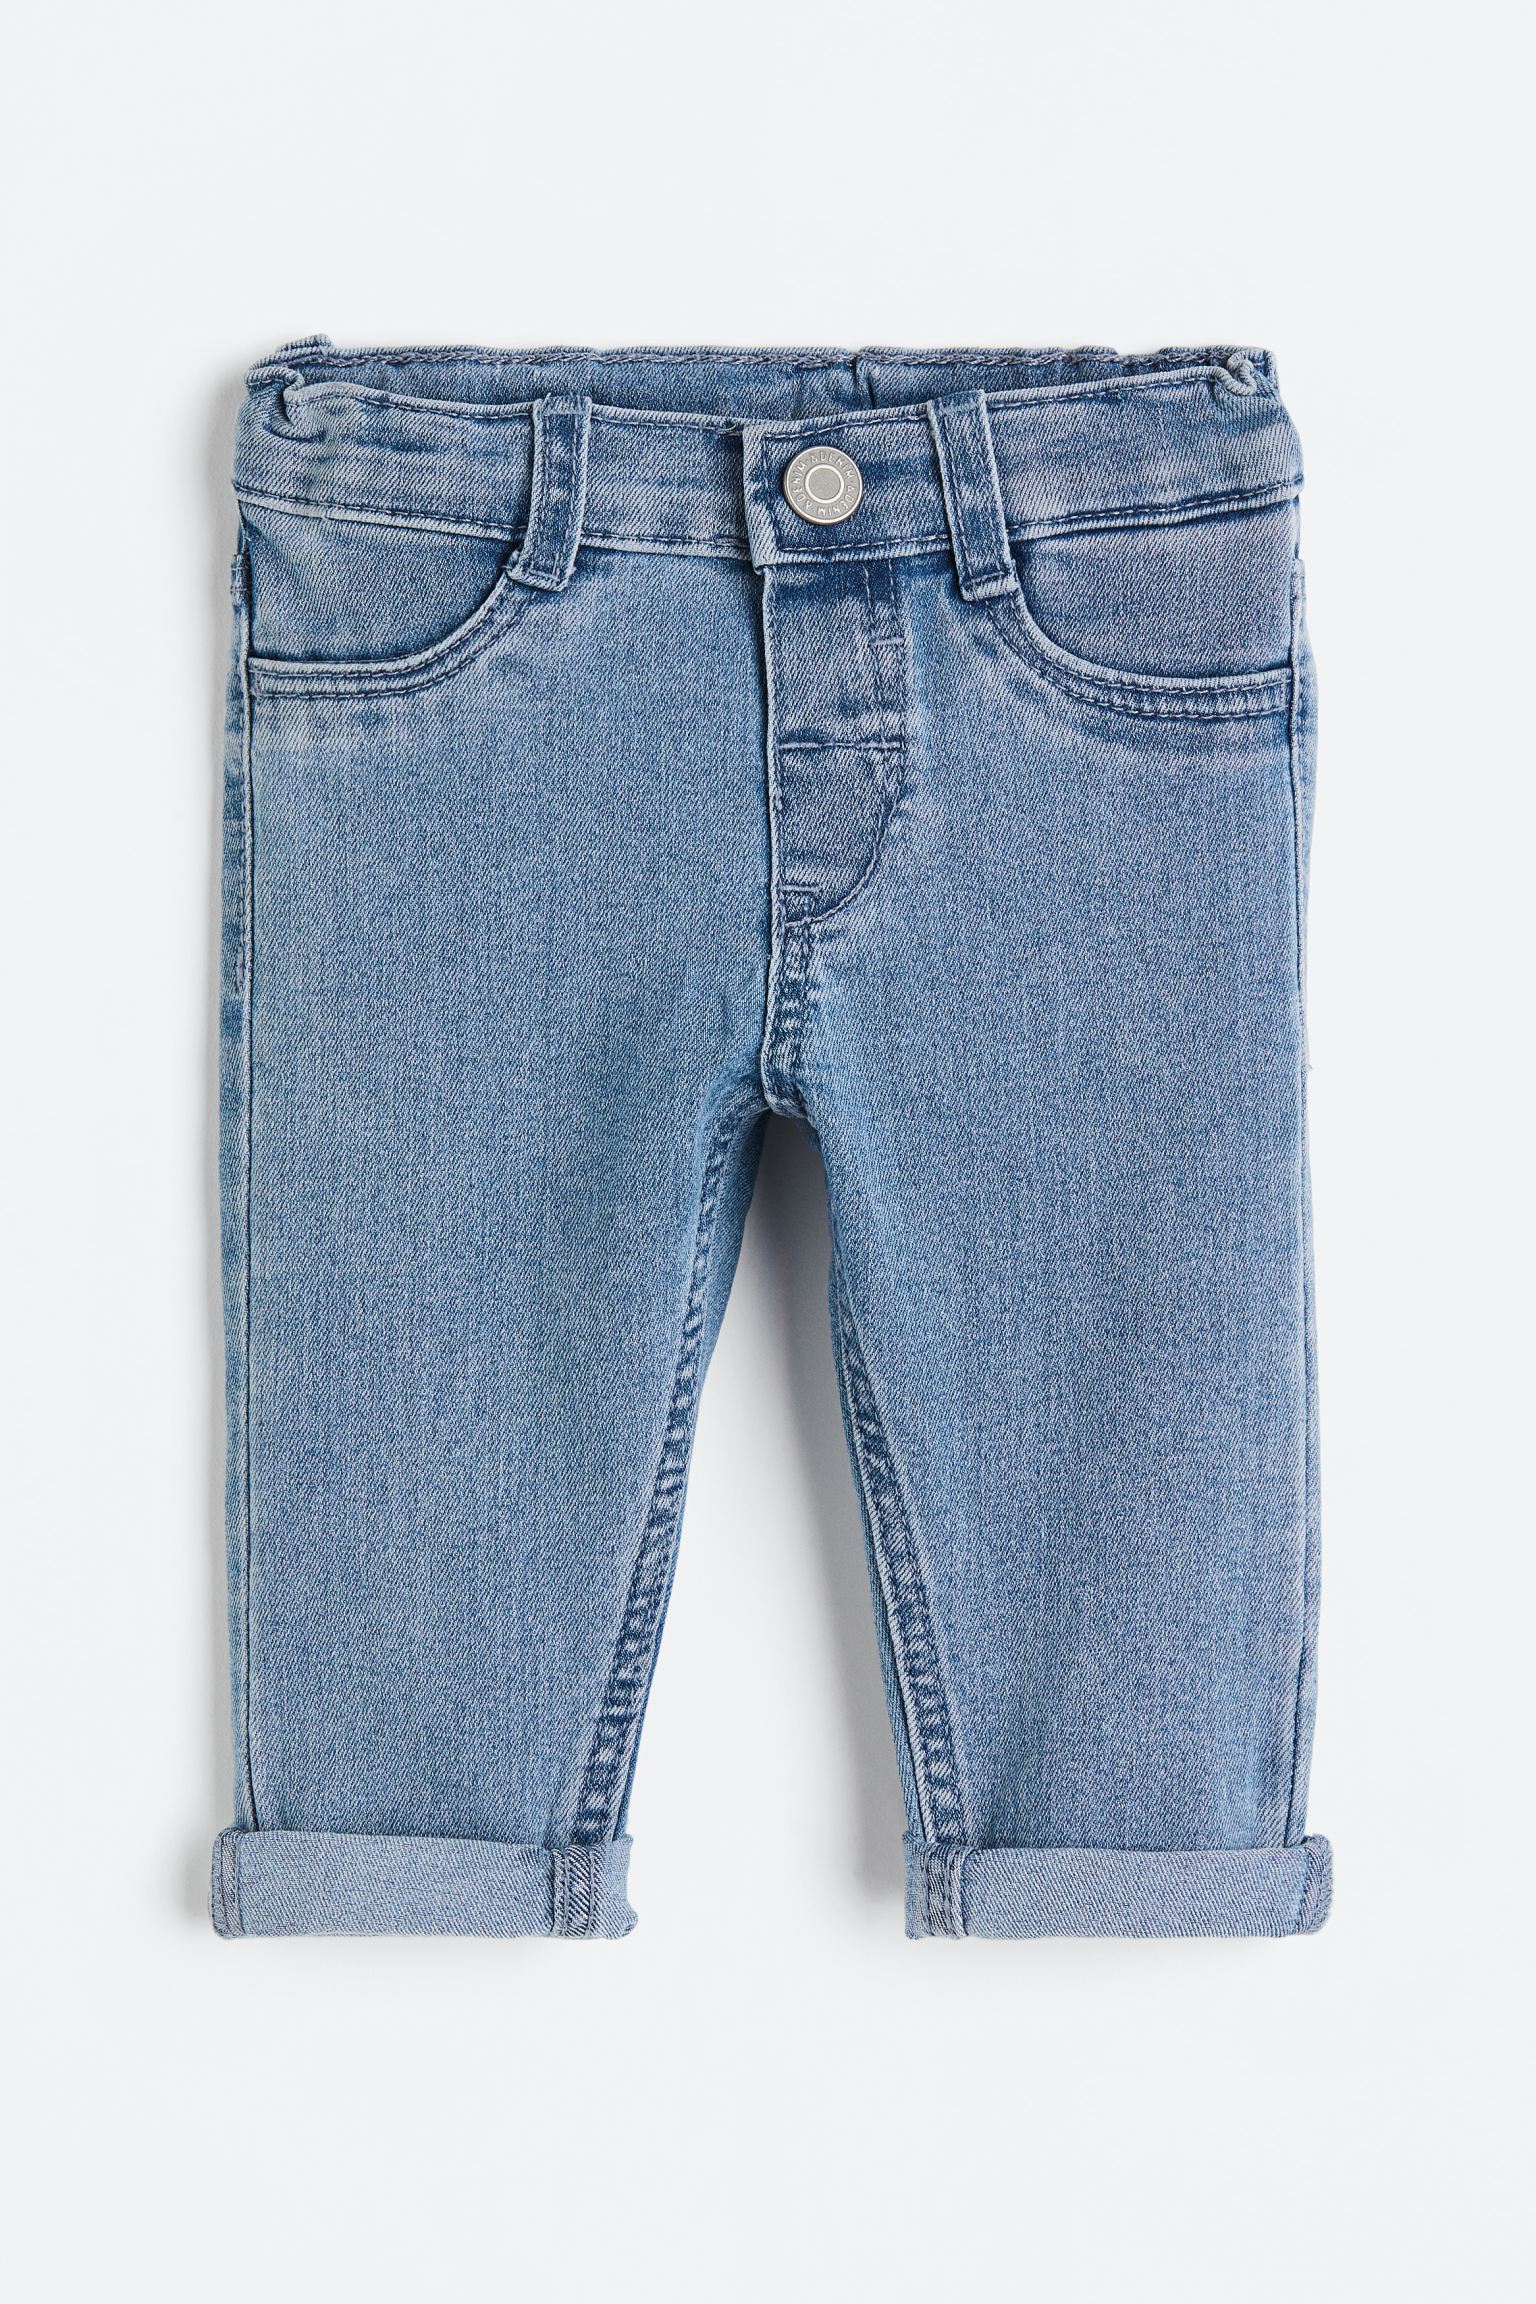 에이치앤엠 H&M Comfort Stretch Skinny Fit Jeans